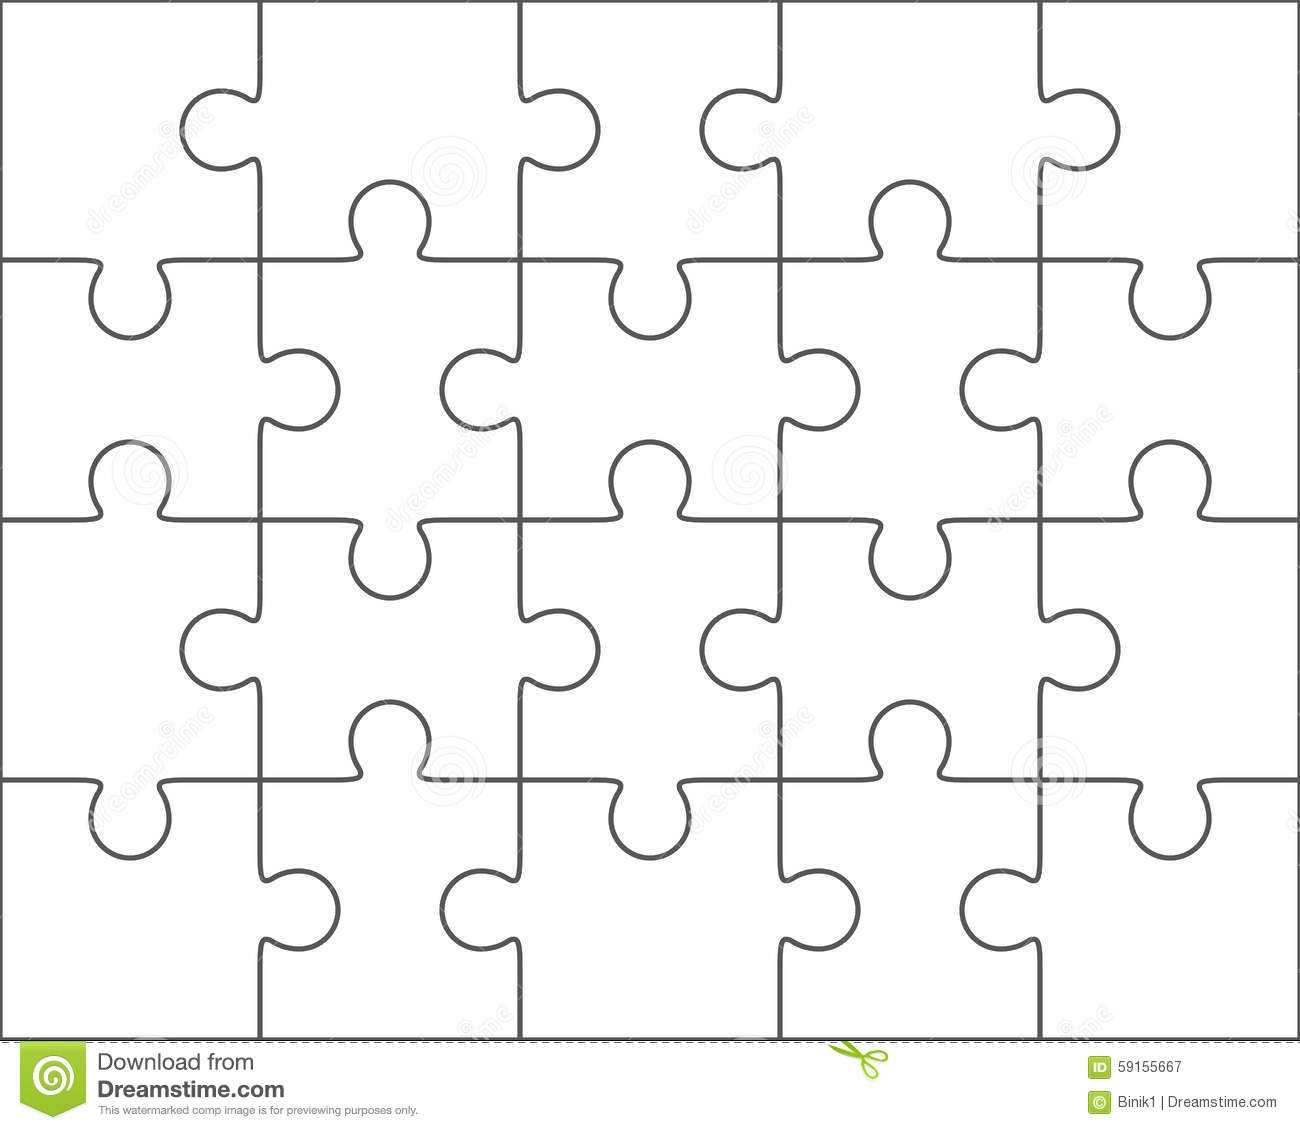 Jigsaw Puzzle Blank Template 4X5, Twenty Pieces Stock Within Blank Jigsaw Piece Template